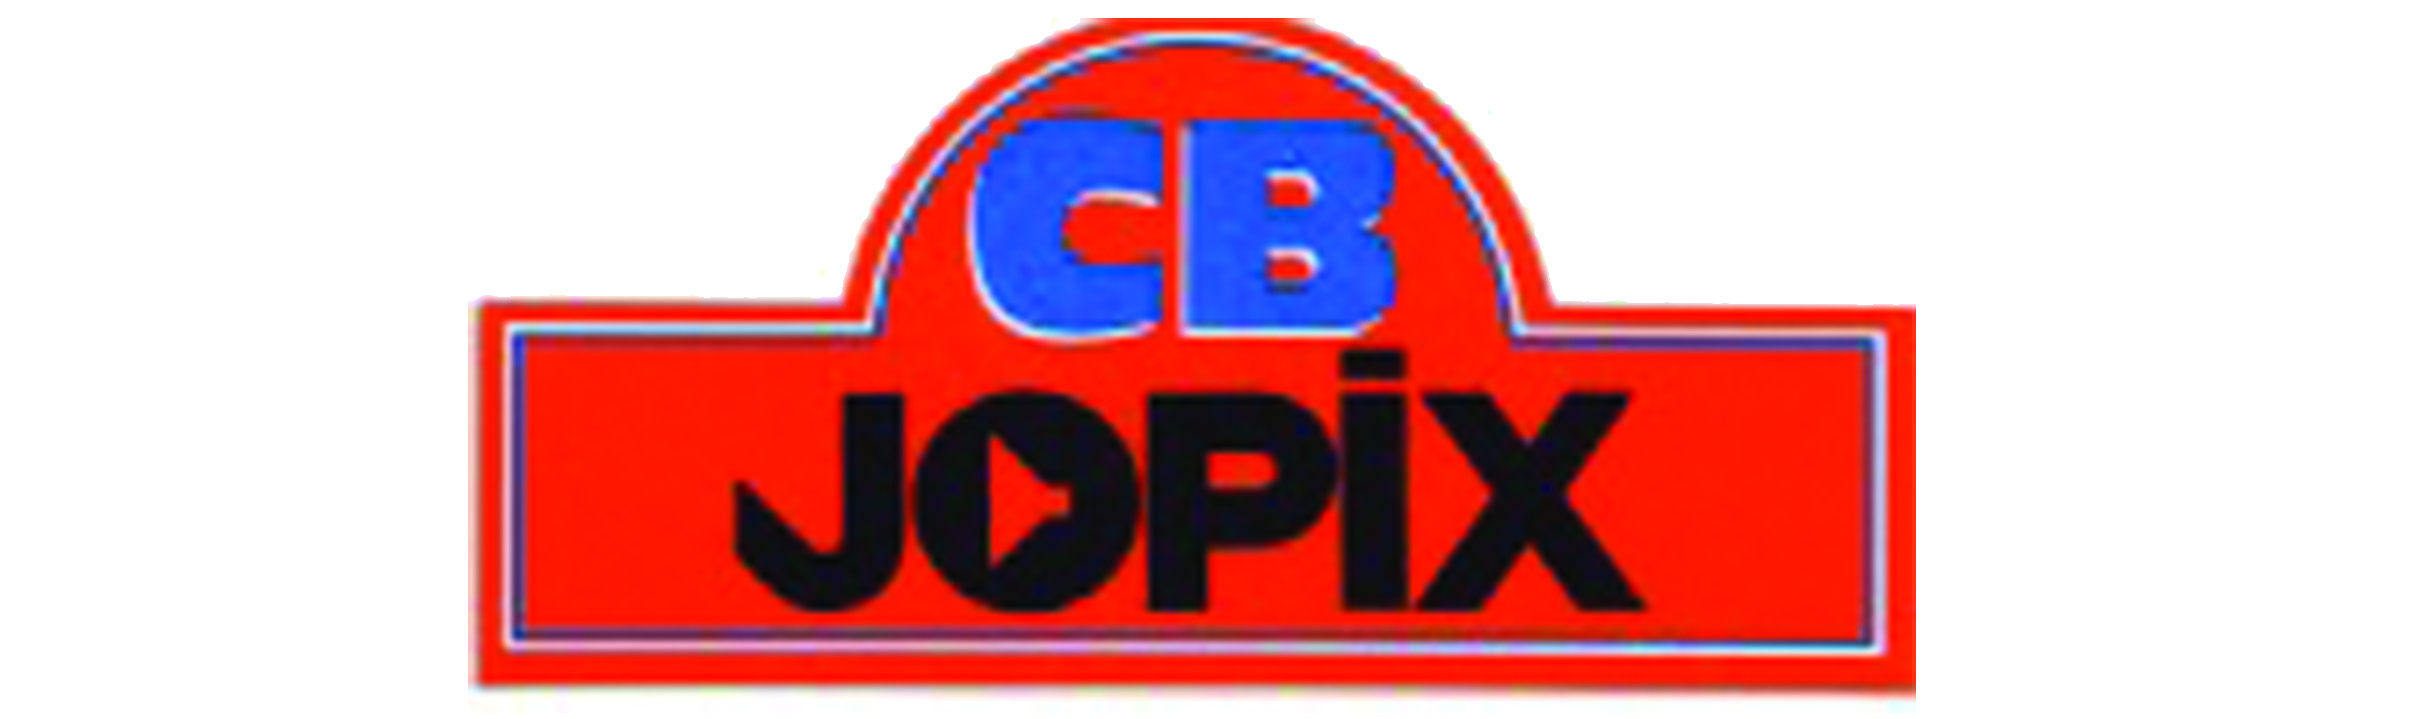 Jopix